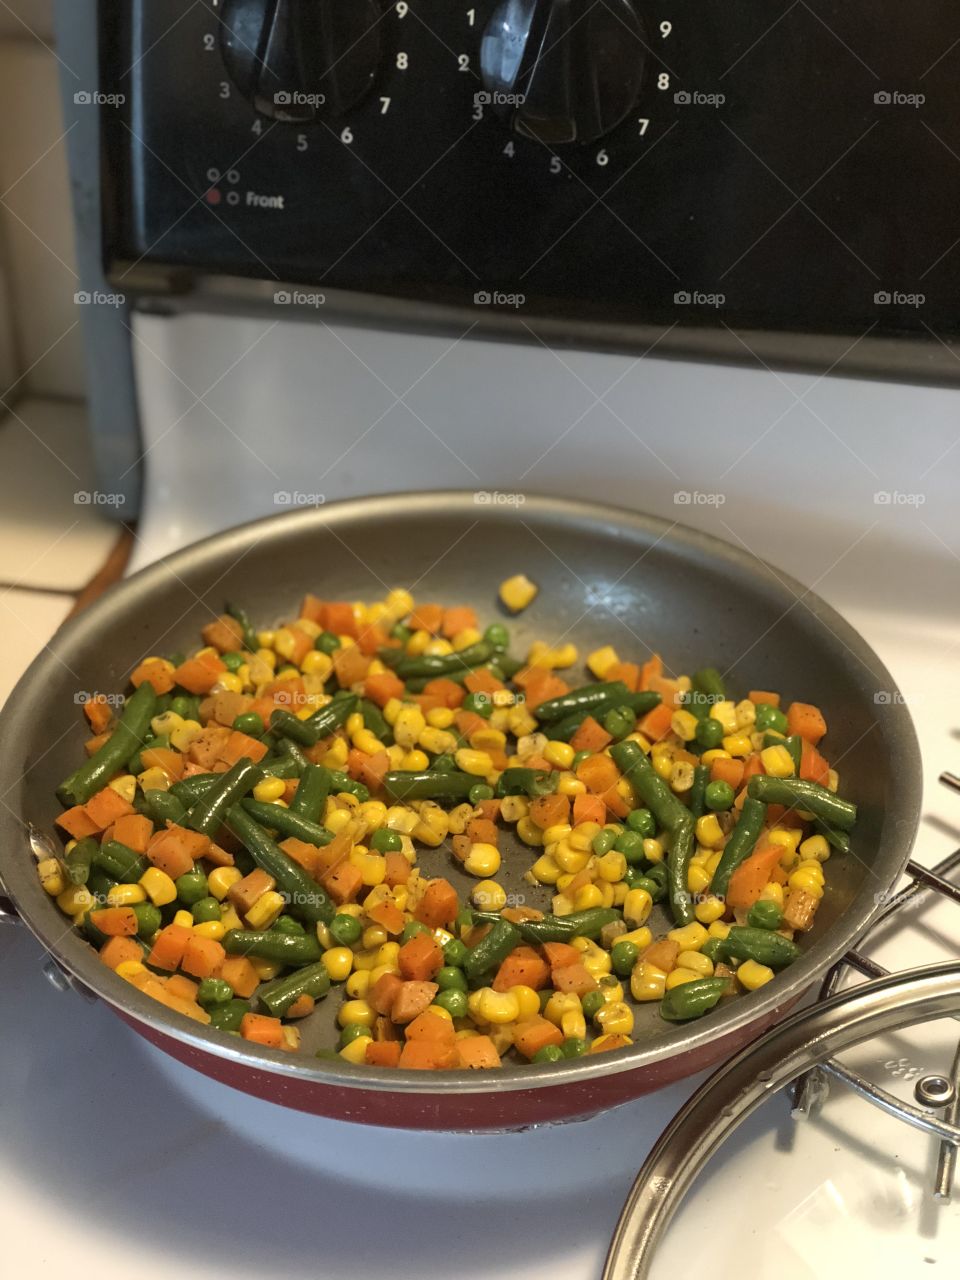 Sautéed veggies